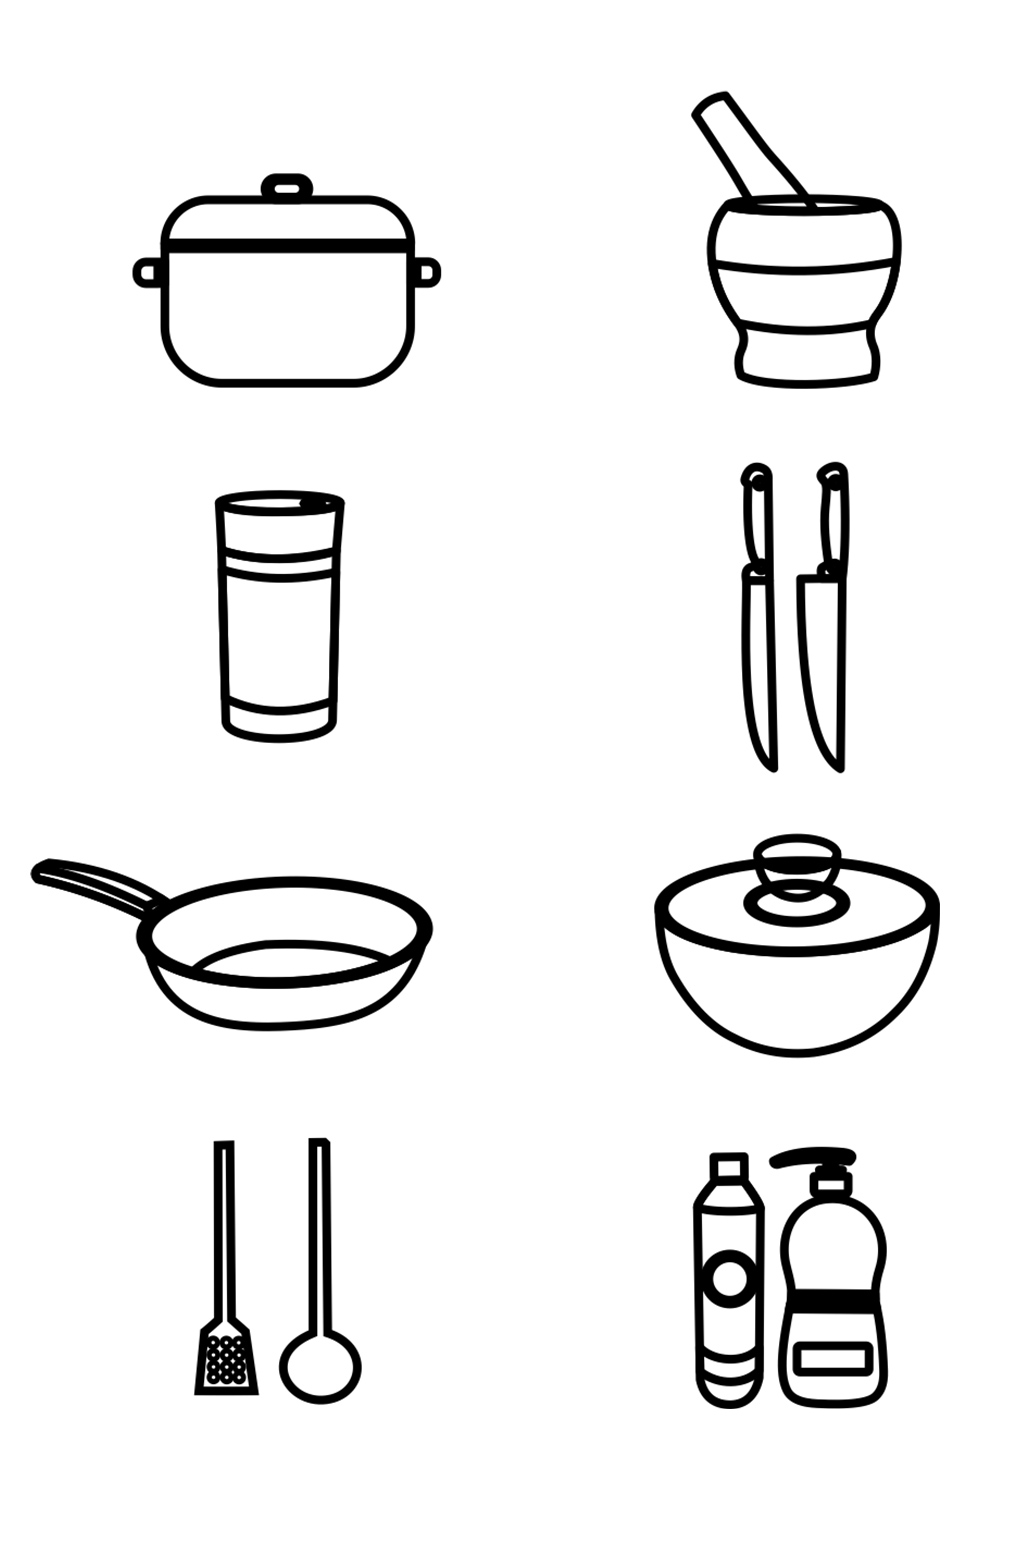 餐具简笔画 厨房用品图片